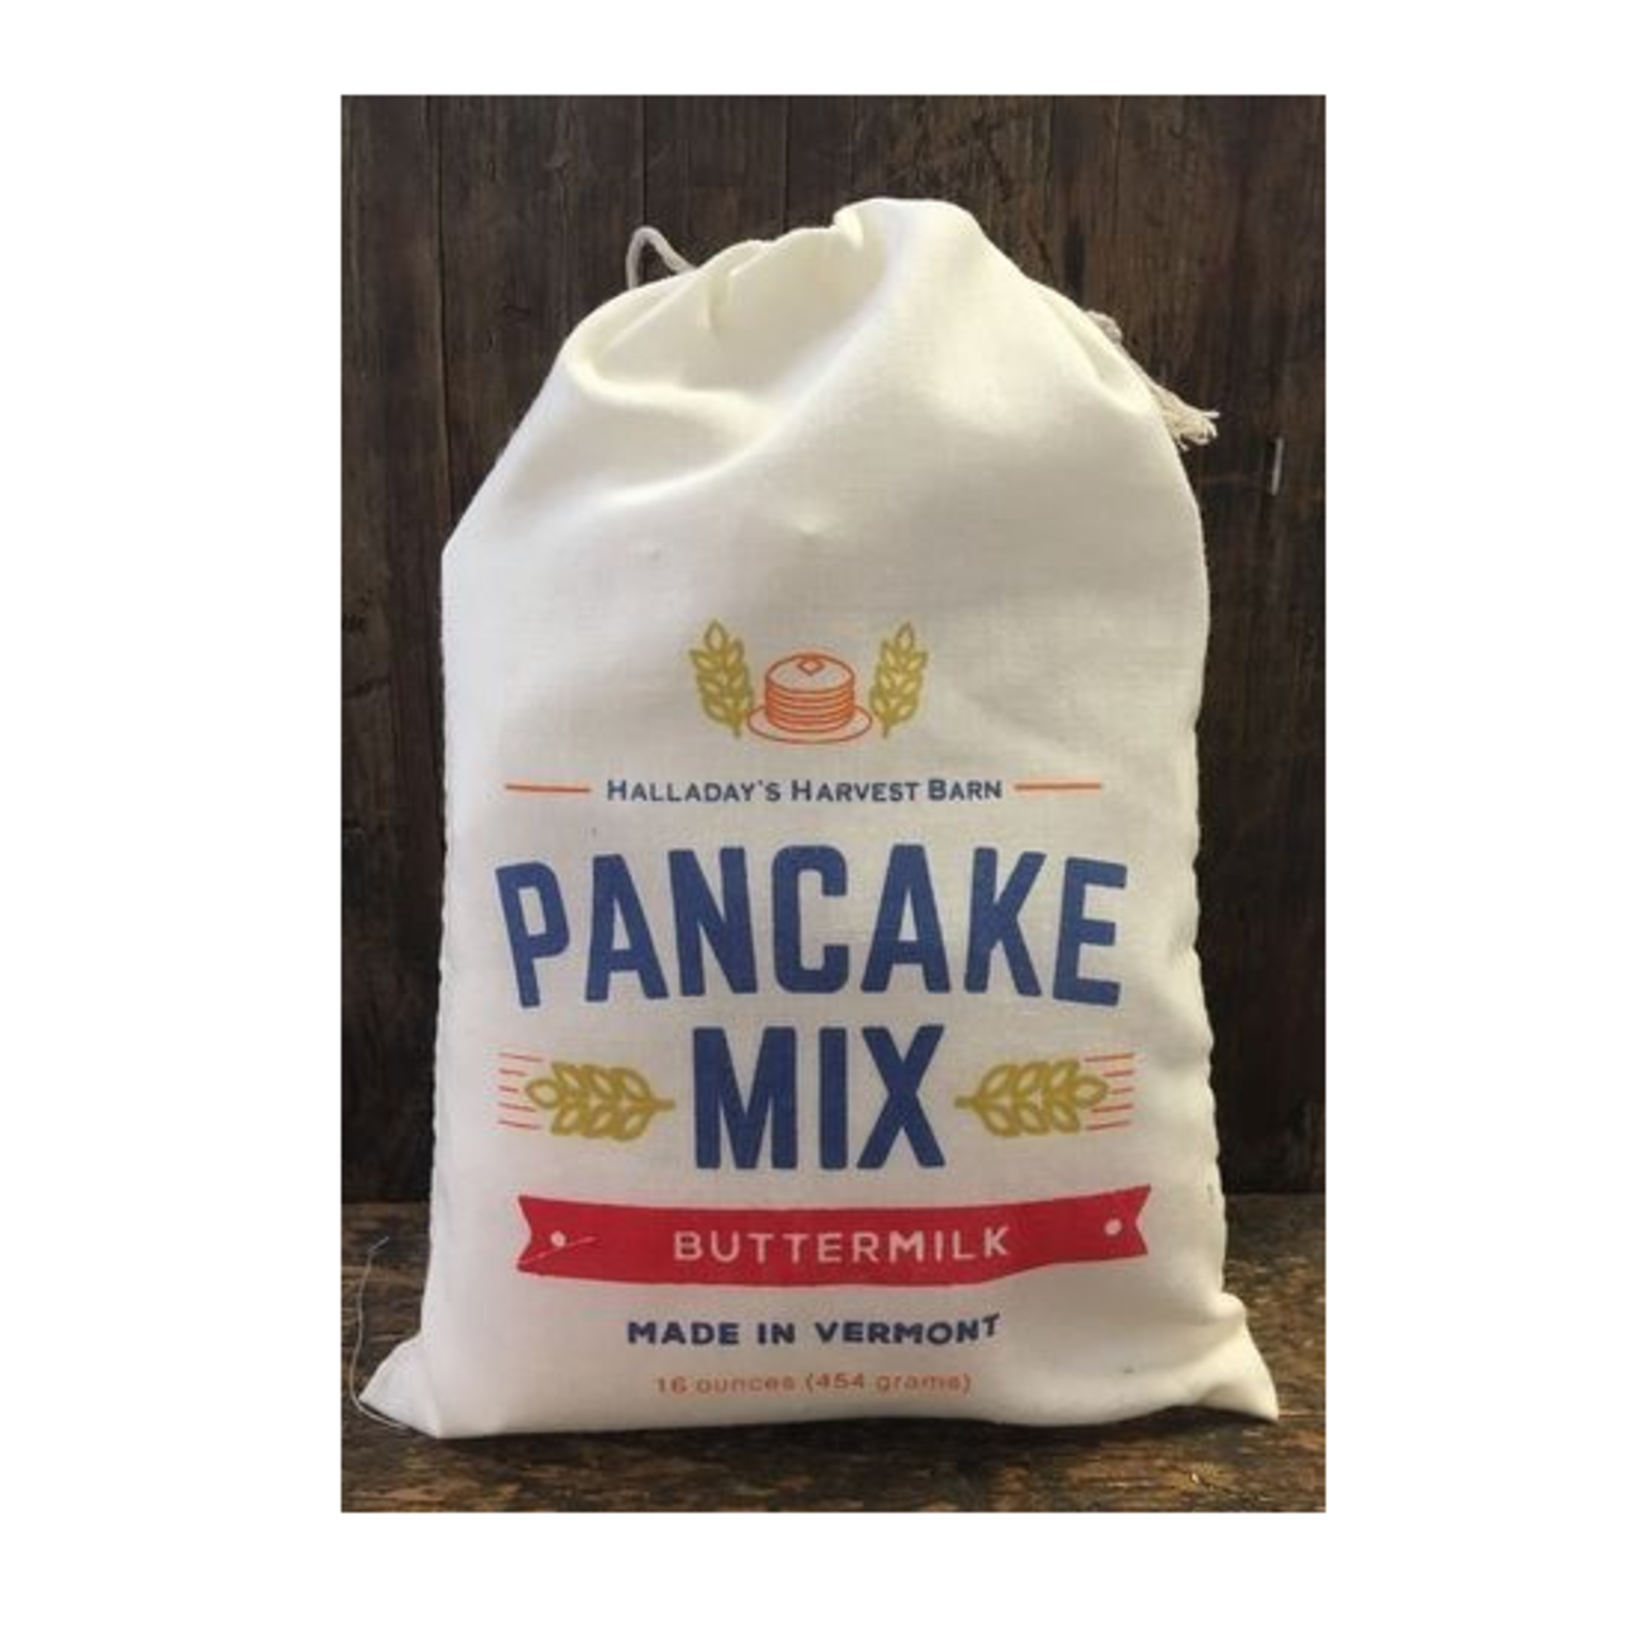 Halladay's Harvest Barn Pancake Mix - Buttermilk